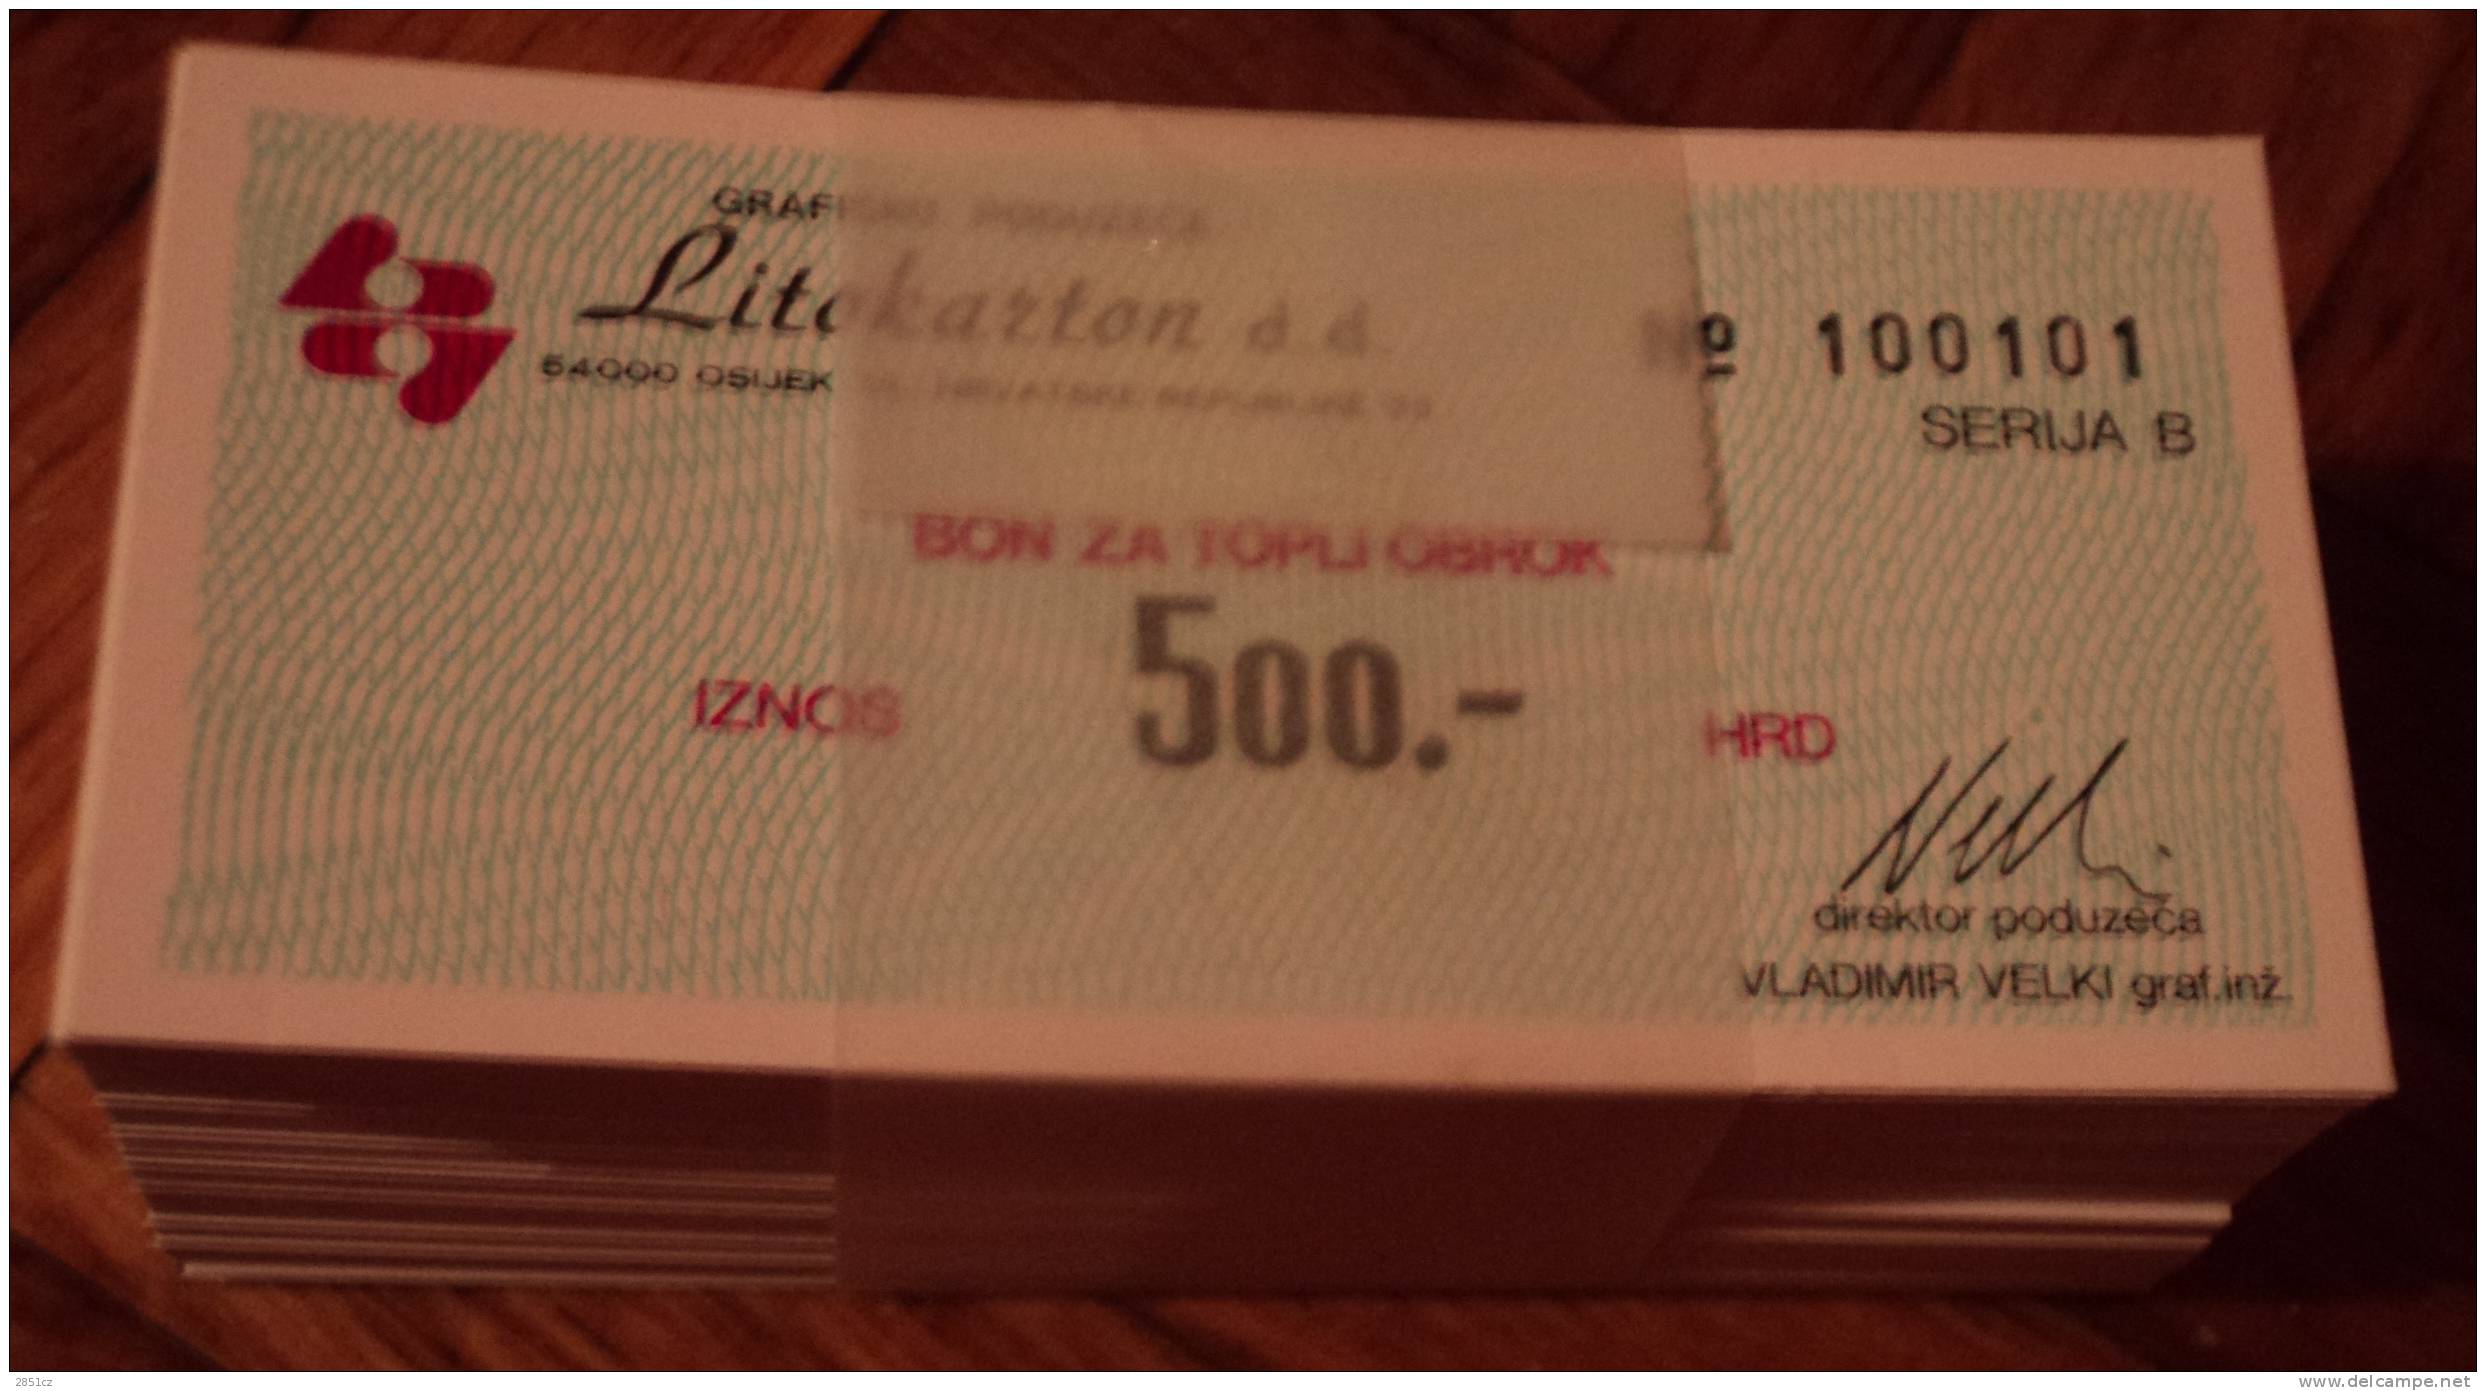 UNC MONEY COUPON FOR HOT MEAL IN COMPANY Litokarton - 500 HRD (bunch Of 100 Coupons) , Osijek, Croatia - Kroatien